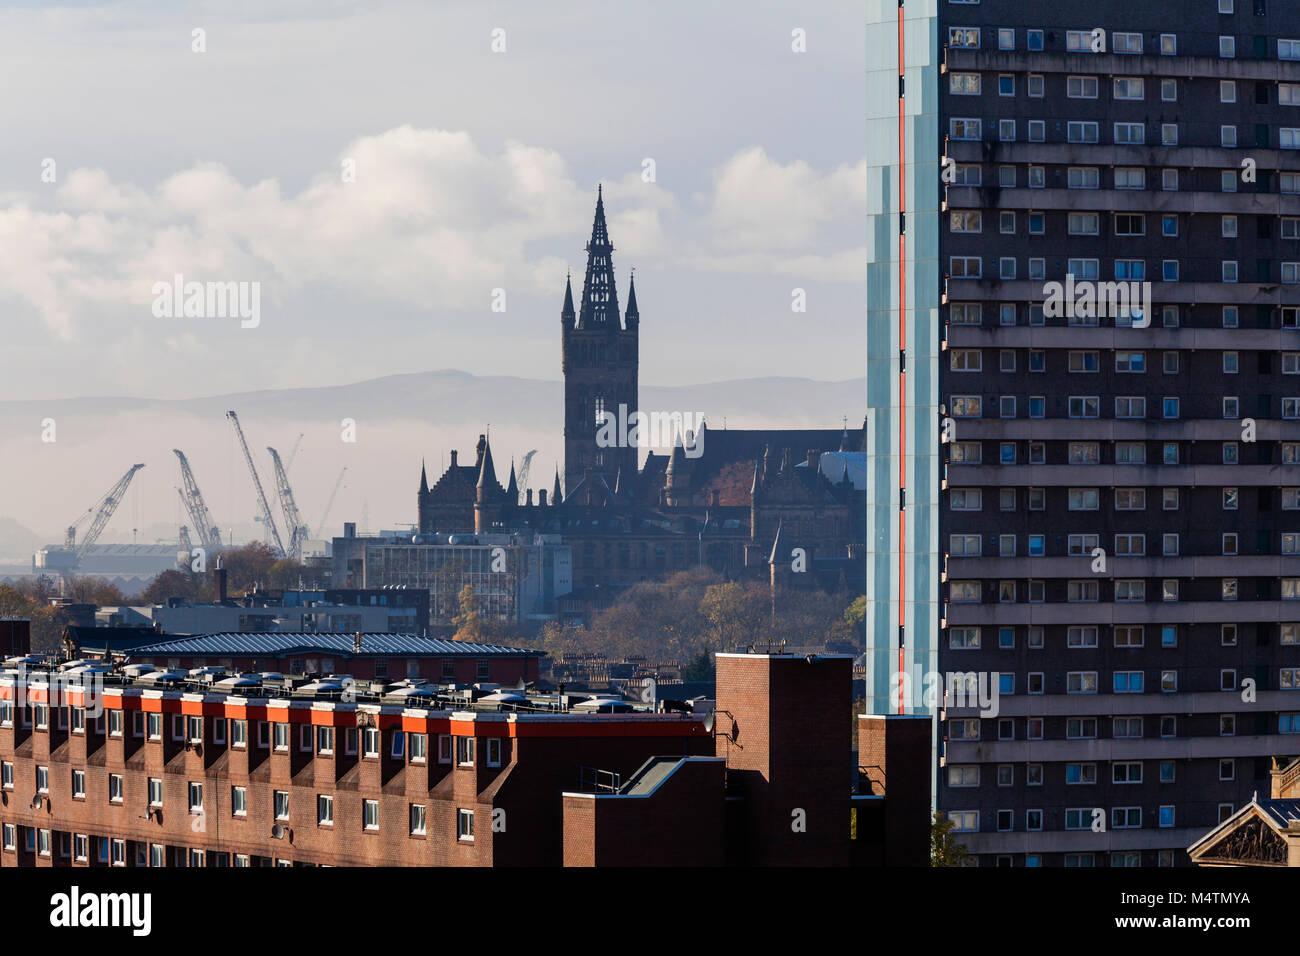 Vue sur les gratte-ciel de Glasgow avec vue sur les logements sociaux vers le clocher de l'Université de Glasgow avec grues de chantier en arrière-plan, Écosse, Royaume-Uni Banque D'Images